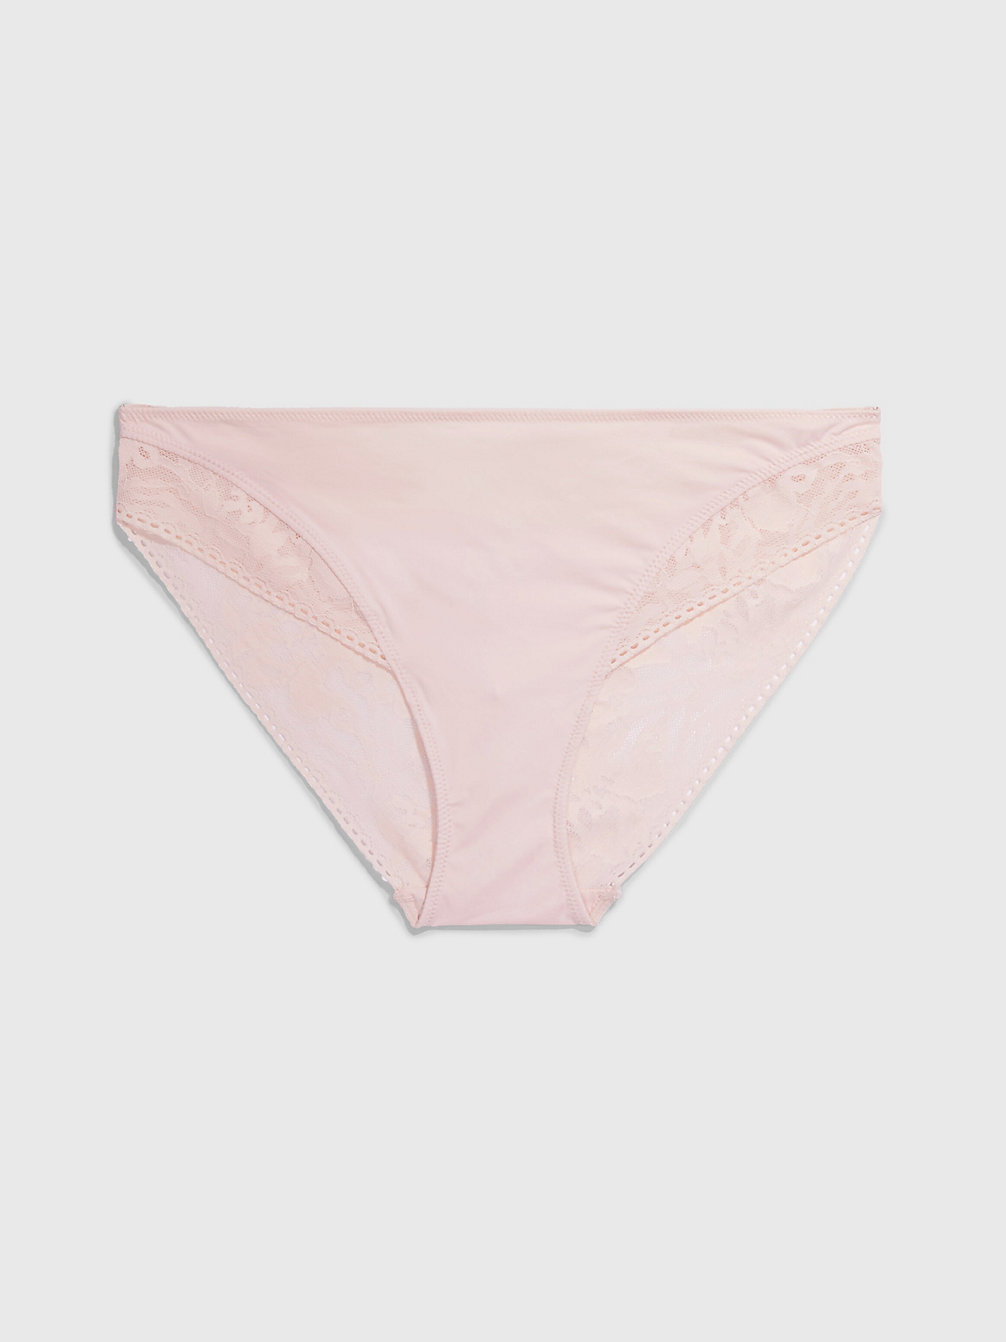 NYMPTHÂ€™S THIGH Bikini Briefs - Ultra Soft Lace undefined women Calvin Klein